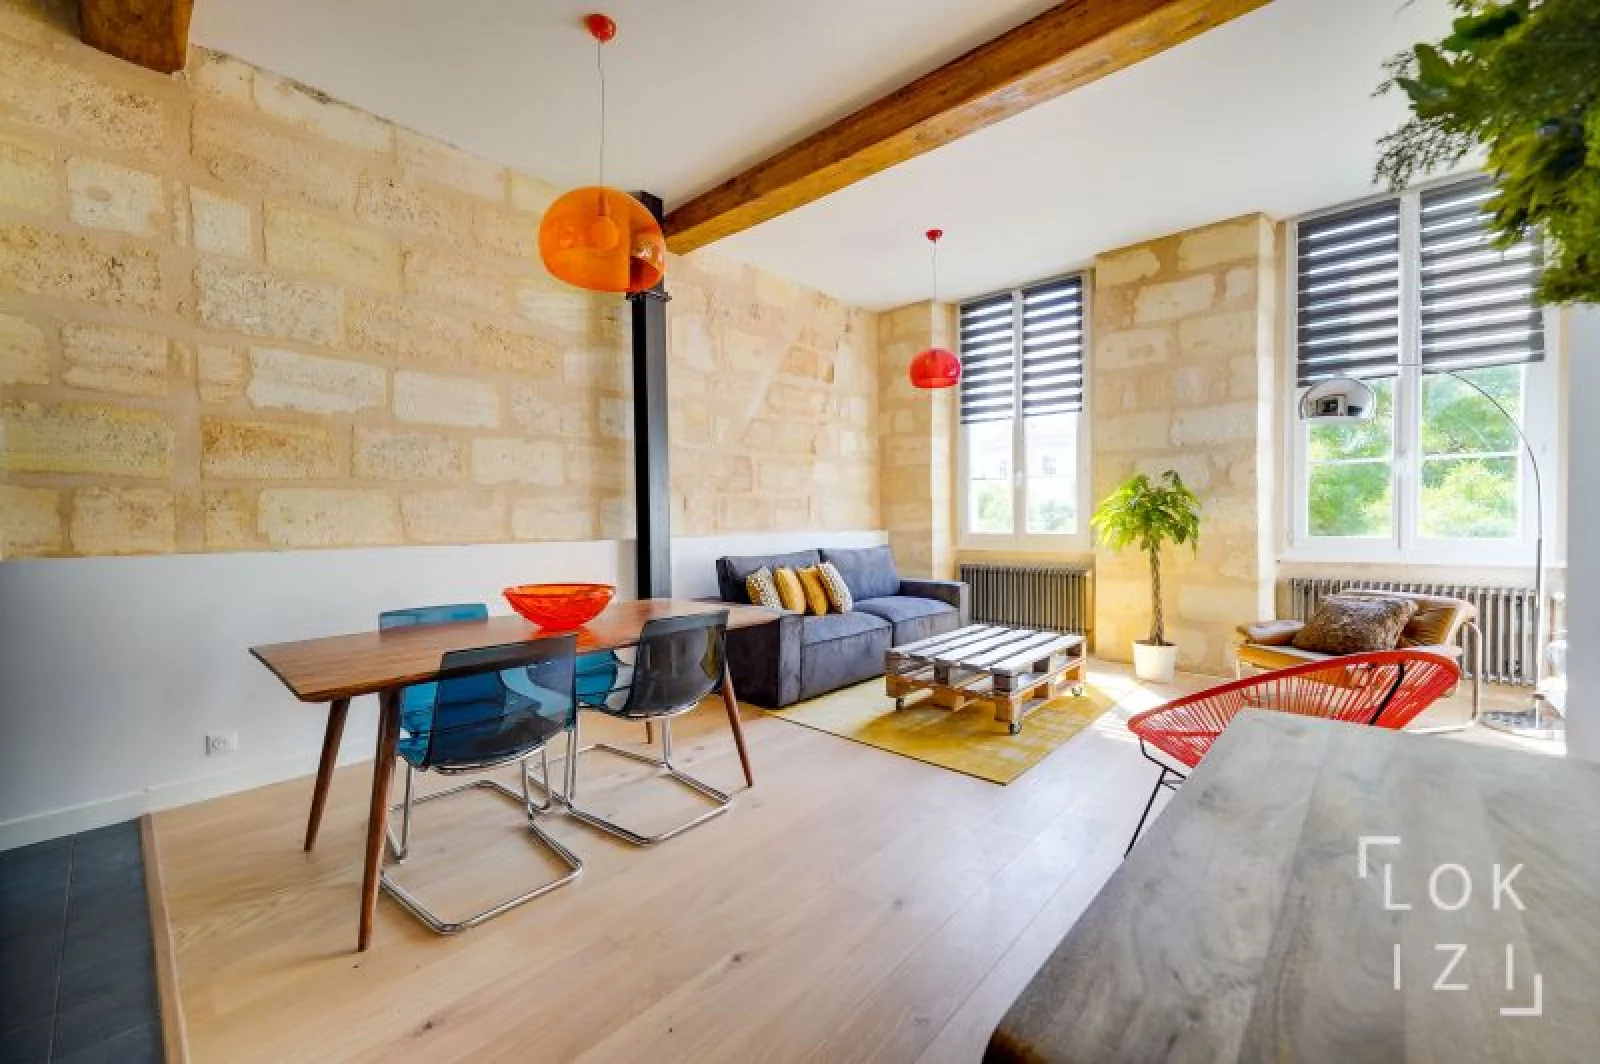 Location appartement meublé 3 pièces 75m² (Bordeaux - Chartrons)